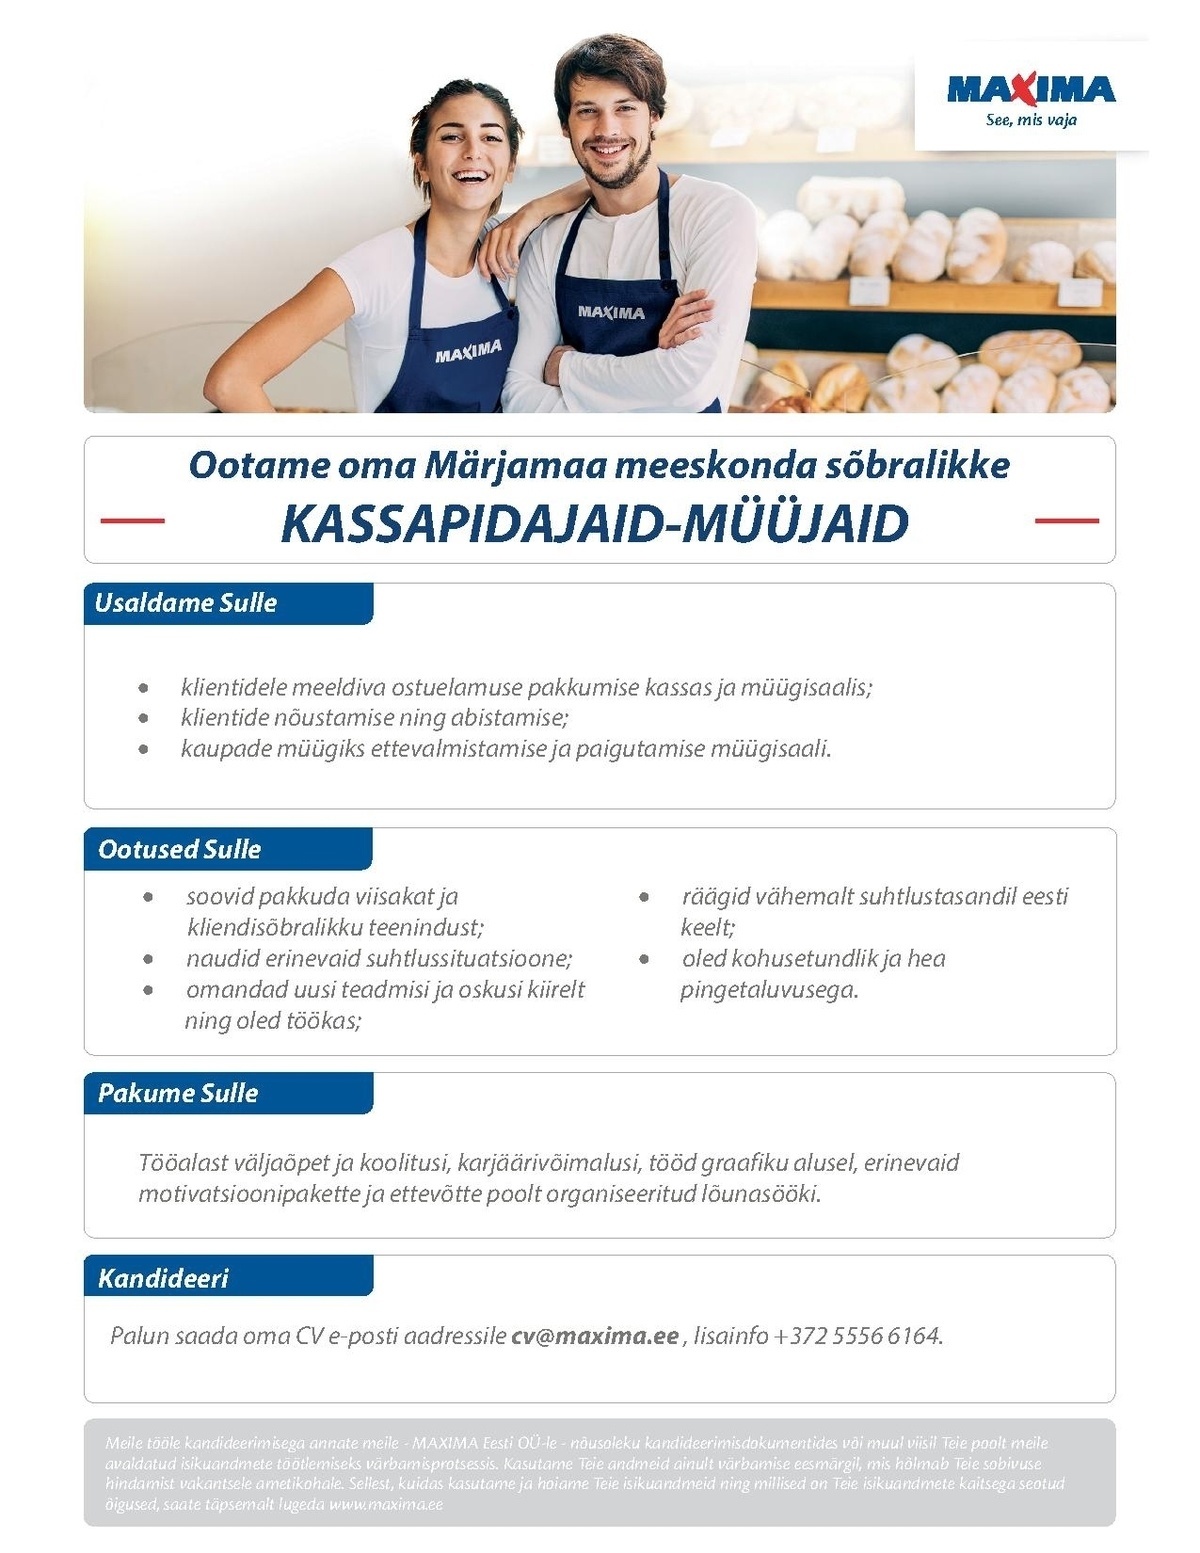 Maxima Eesti OÜ Kassapidaja-müüja Märjamaa Maximas